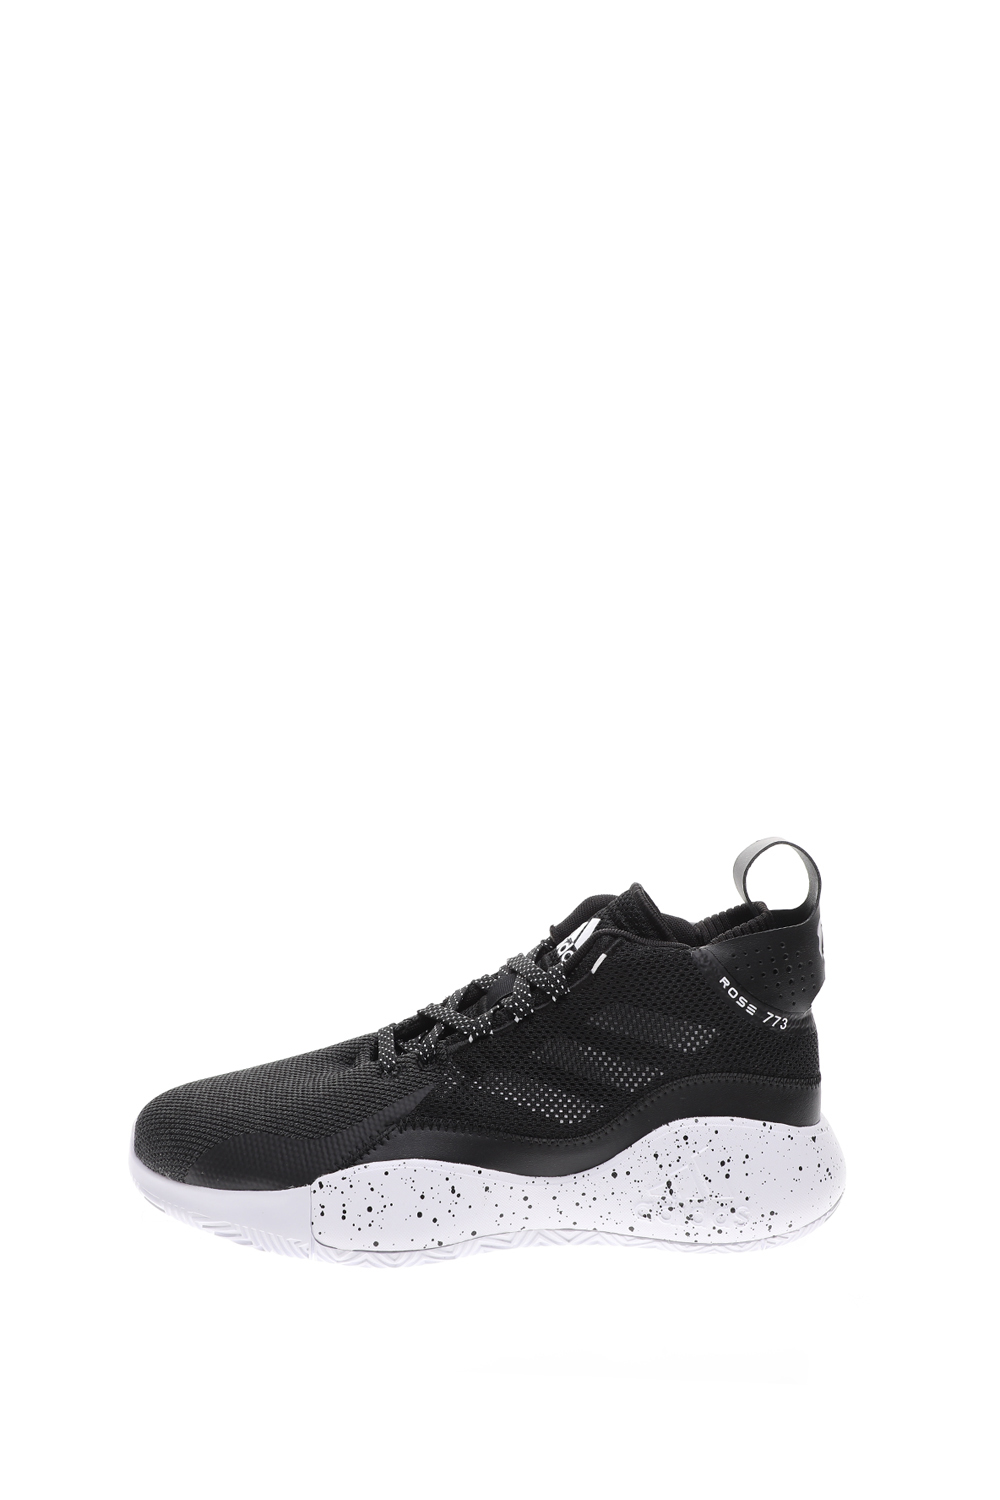 Ανδρικά/Παπούτσια/Αθλητικά/Basketball adidas Performance - Unisex παπούτσια basketball adidas Performance D Rose μαύρα λευκά